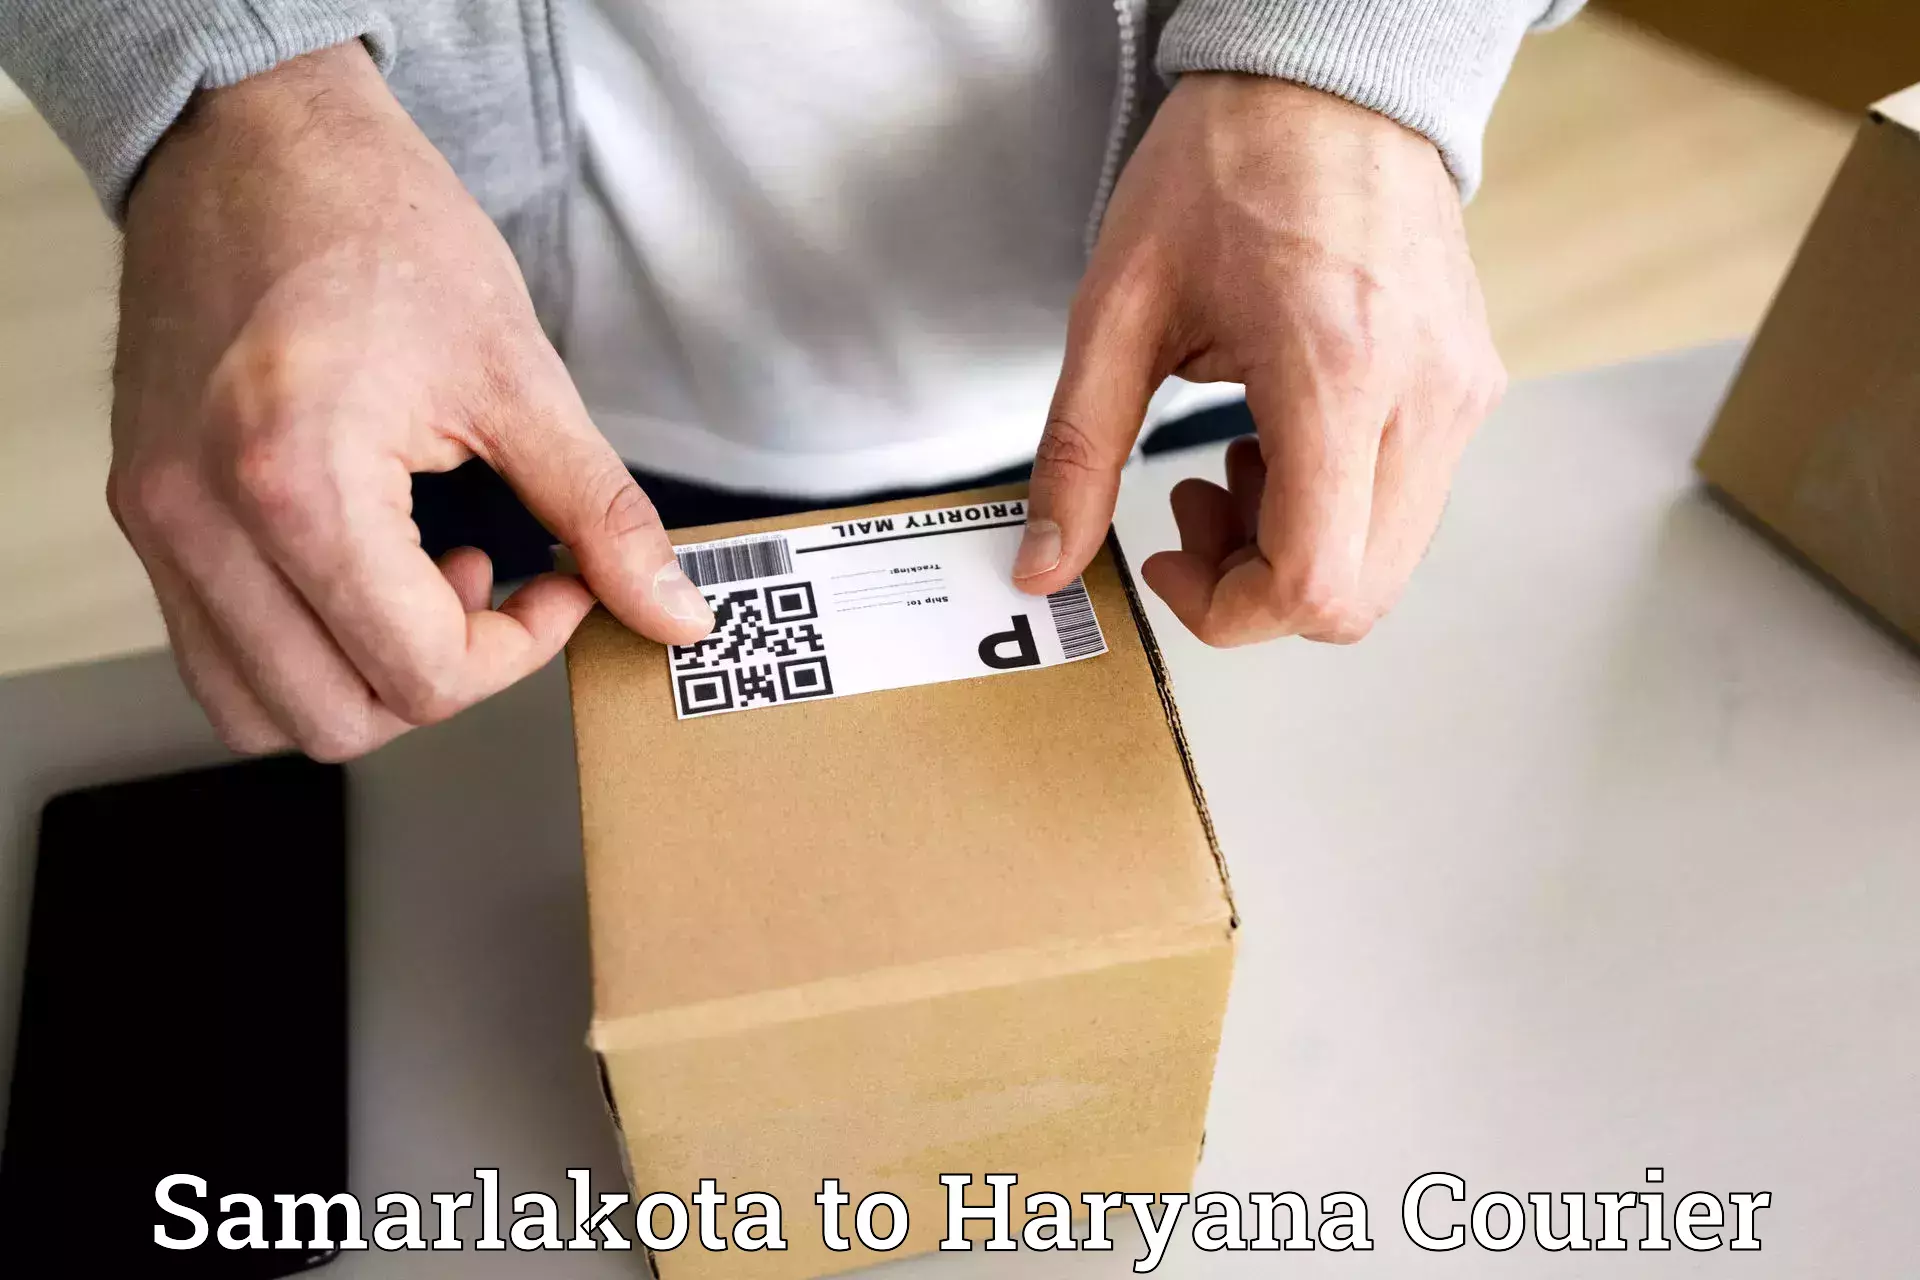 On-call courier service Samarlakota to Gohana